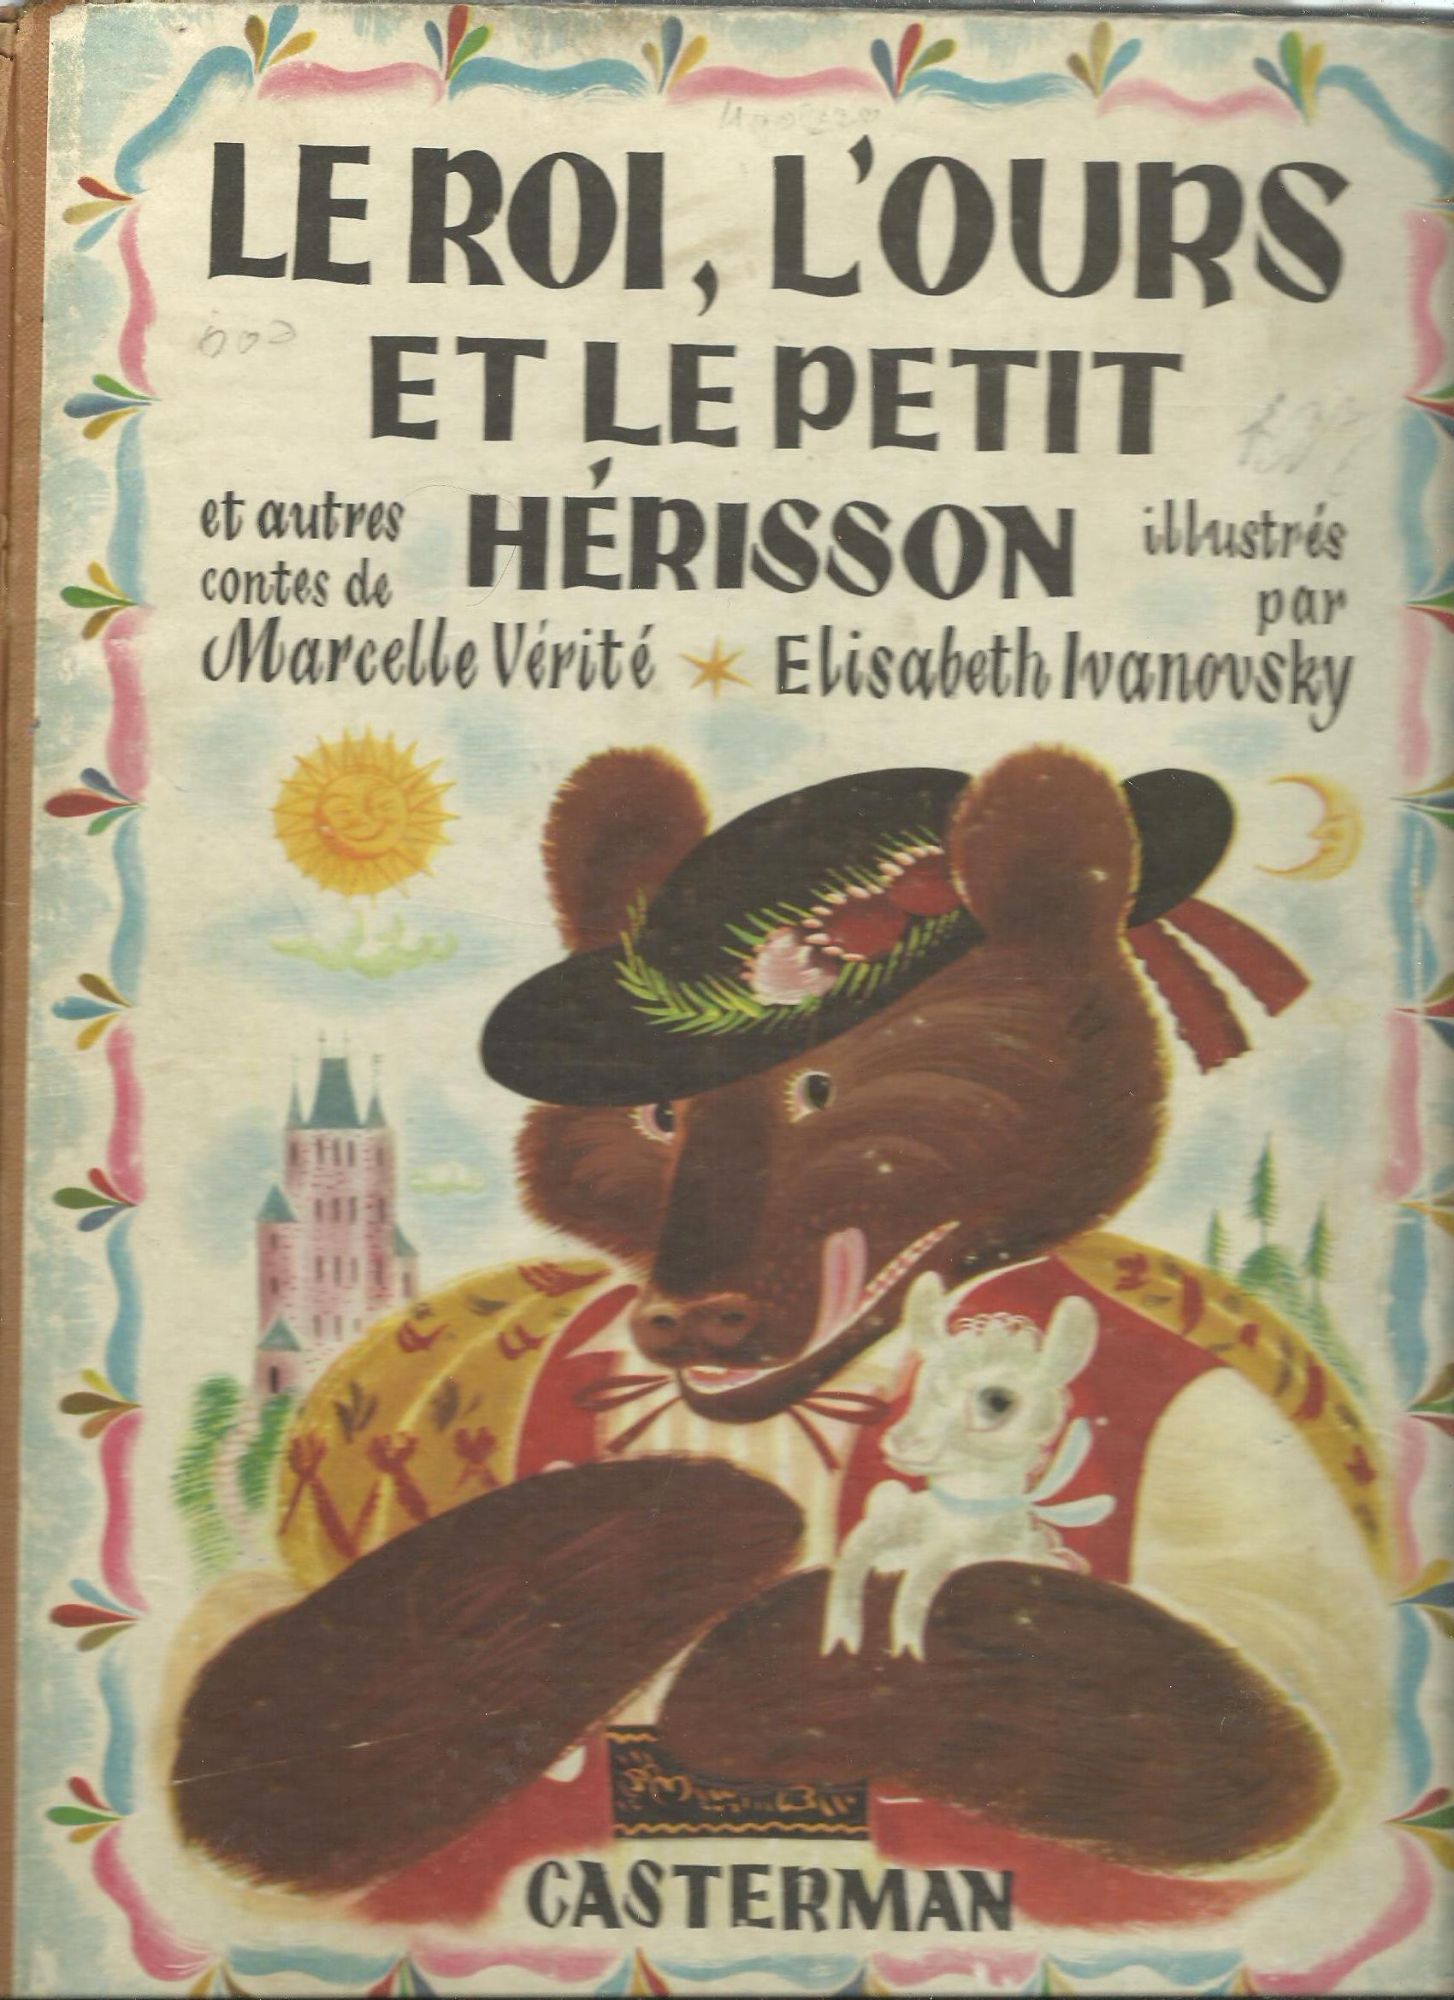 Le Roi,L’ours et Le Petit Herisson